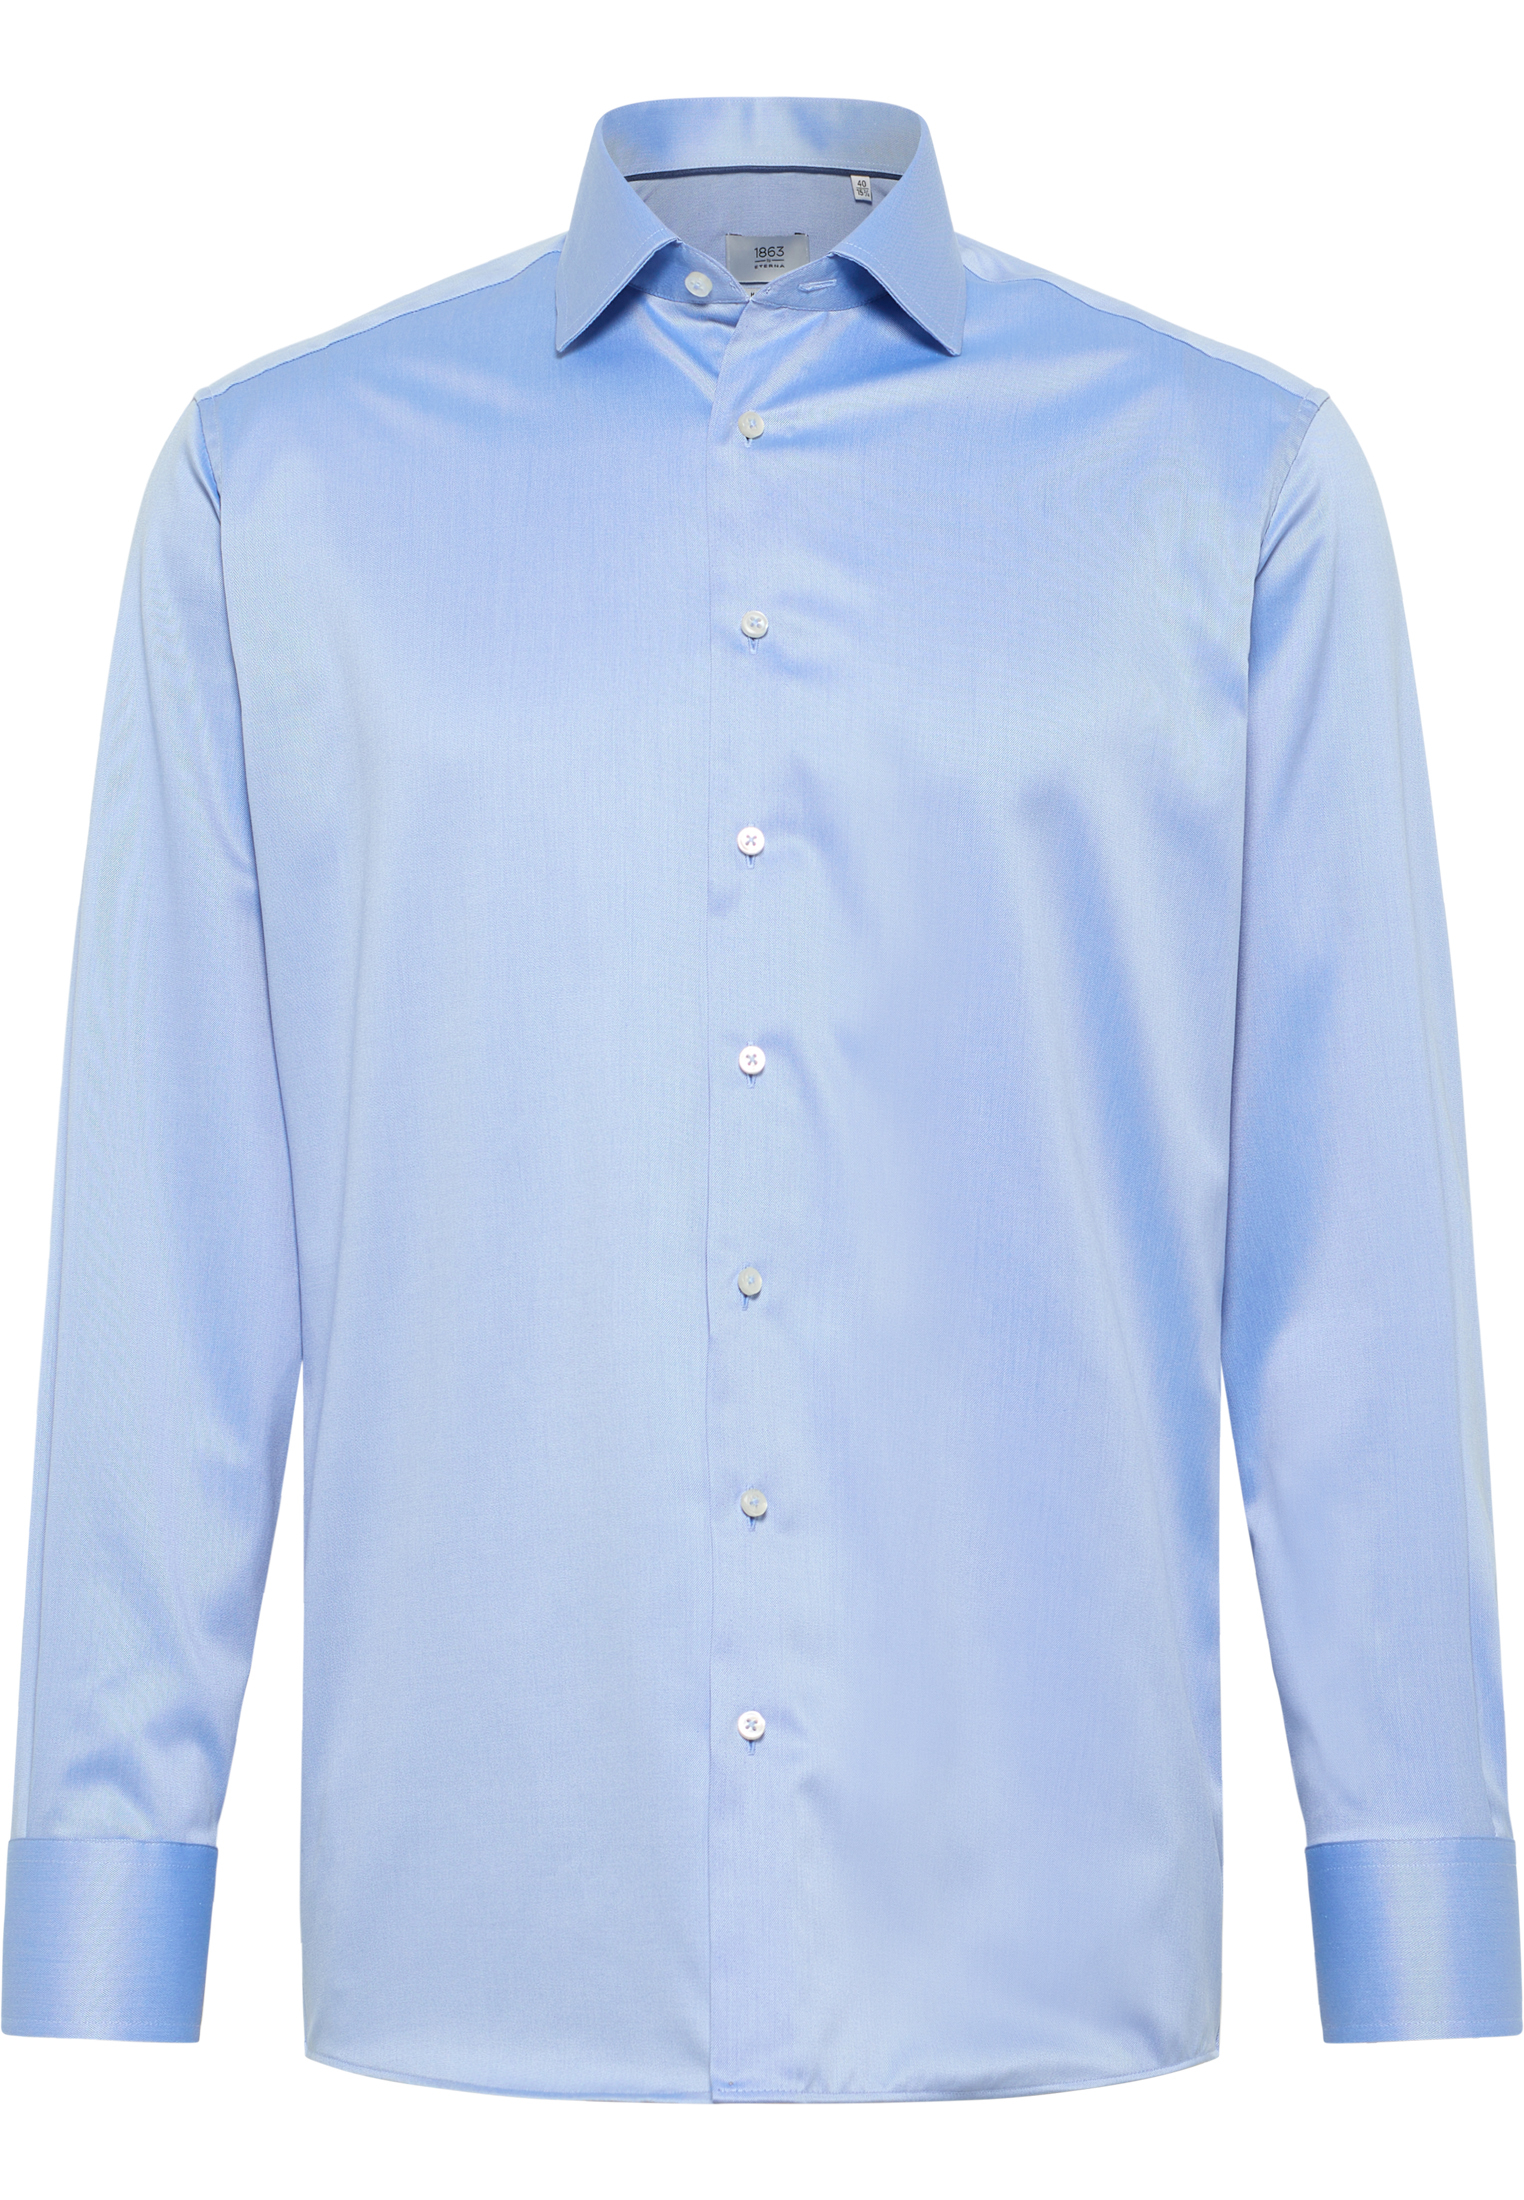 MODERN FIT Luxury Shirt in sky blue plain